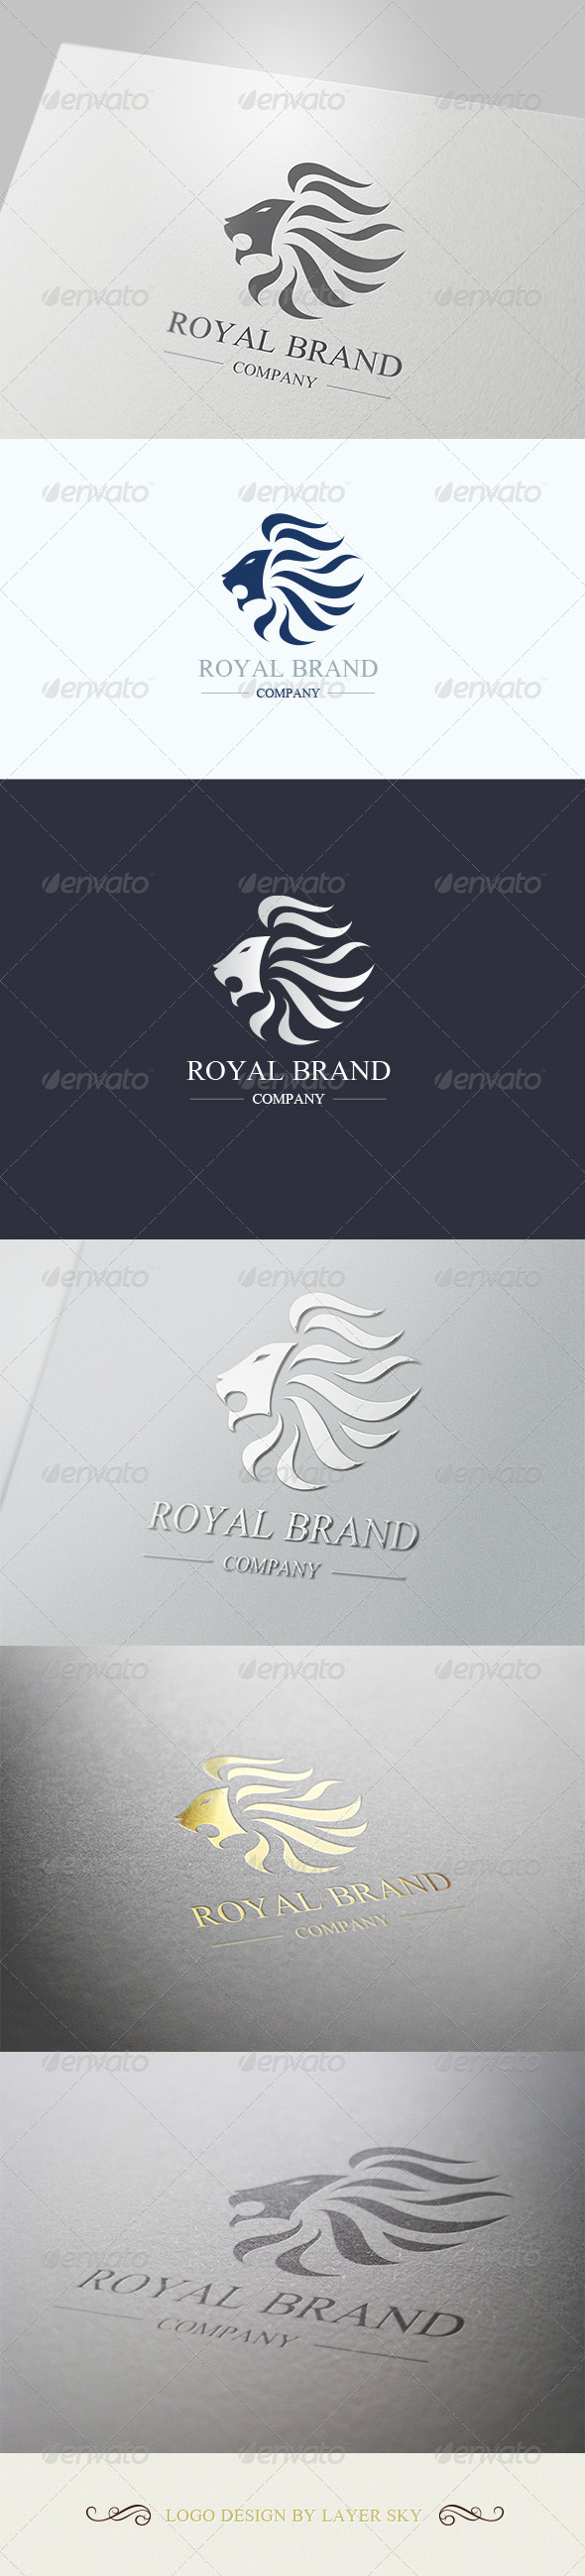 Lion Royal Brand Logo 1